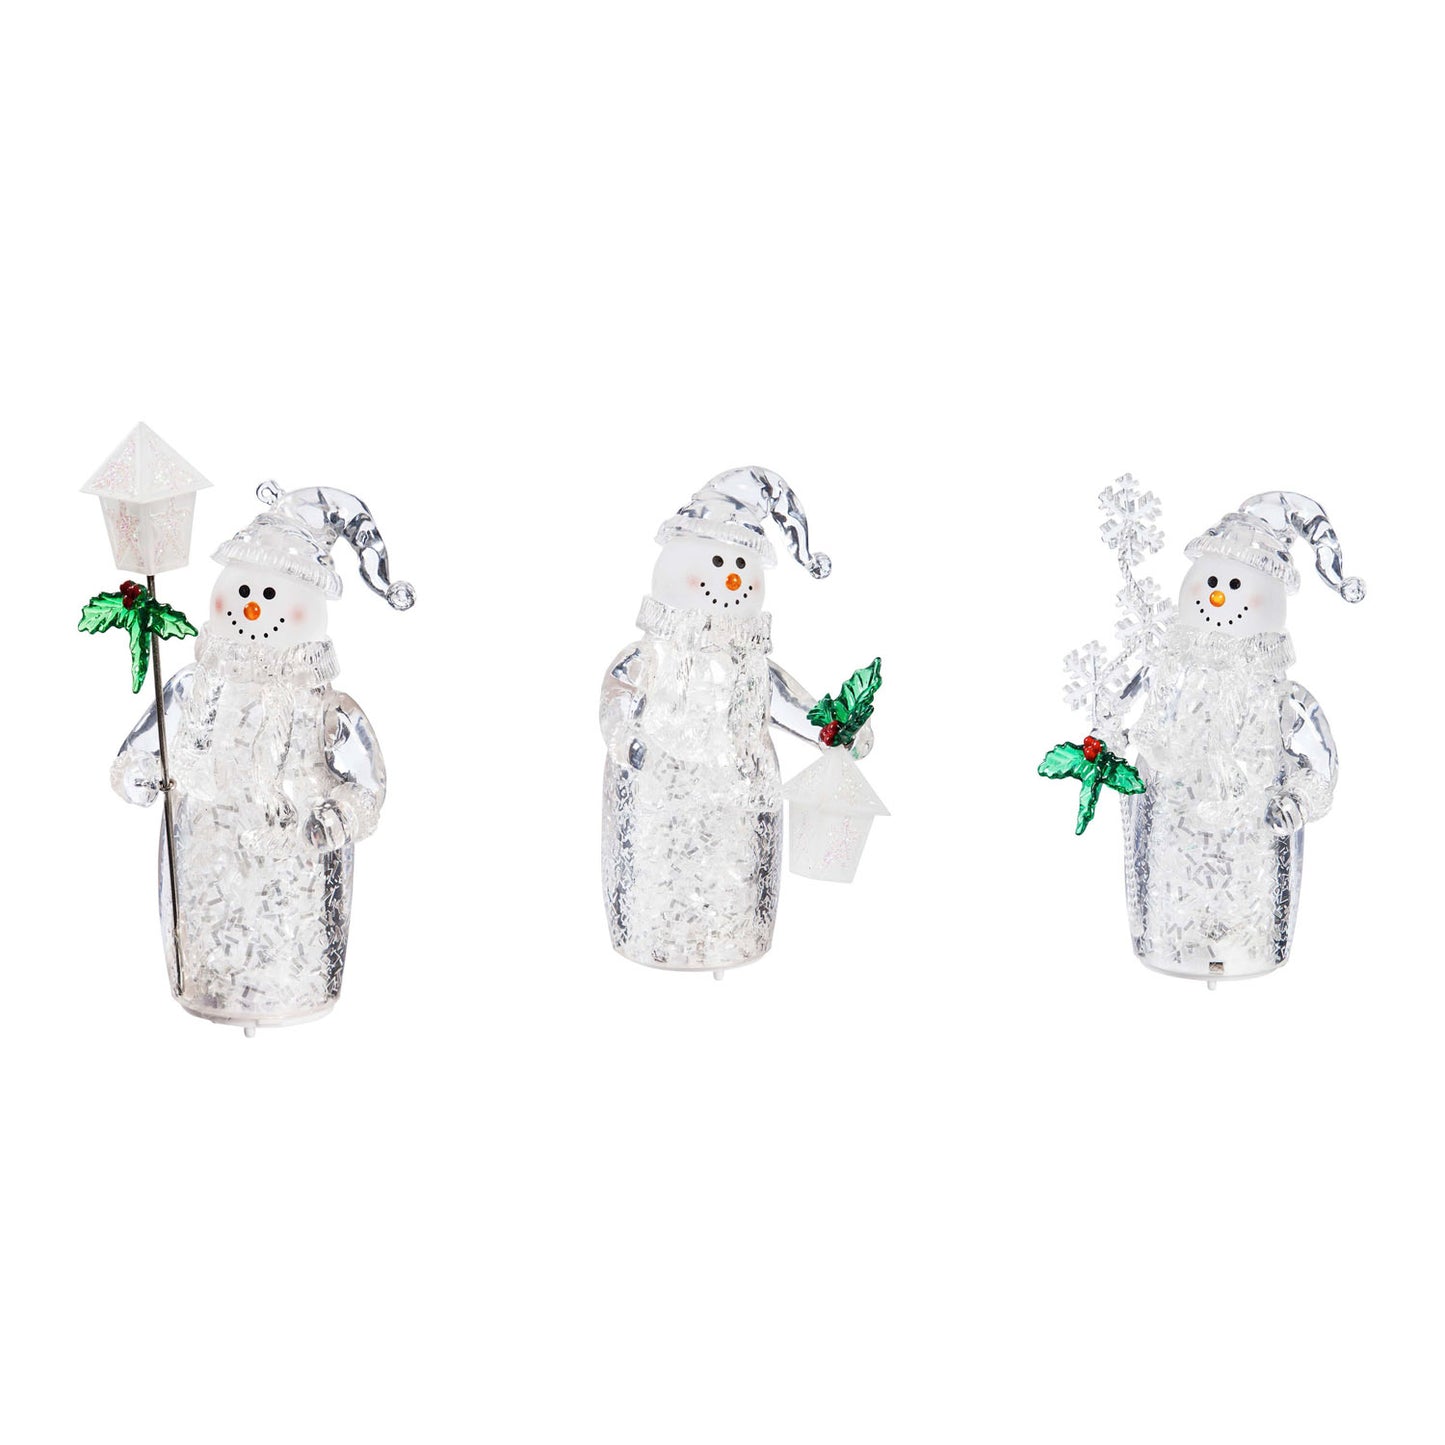 4.5"H LED Cheerful Snowman Ornament